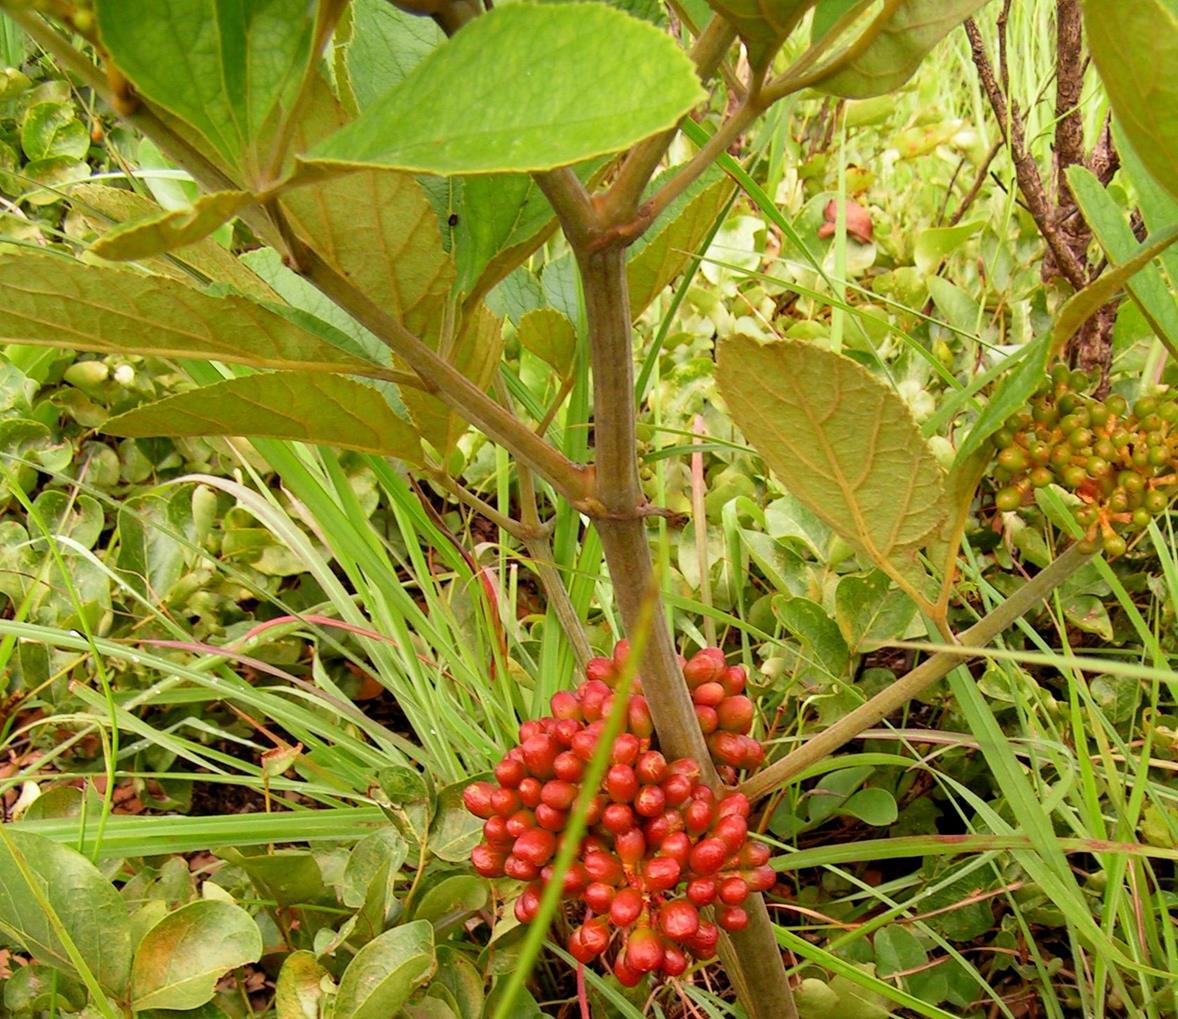 Ampelocissus obtusata subsp. obtusata